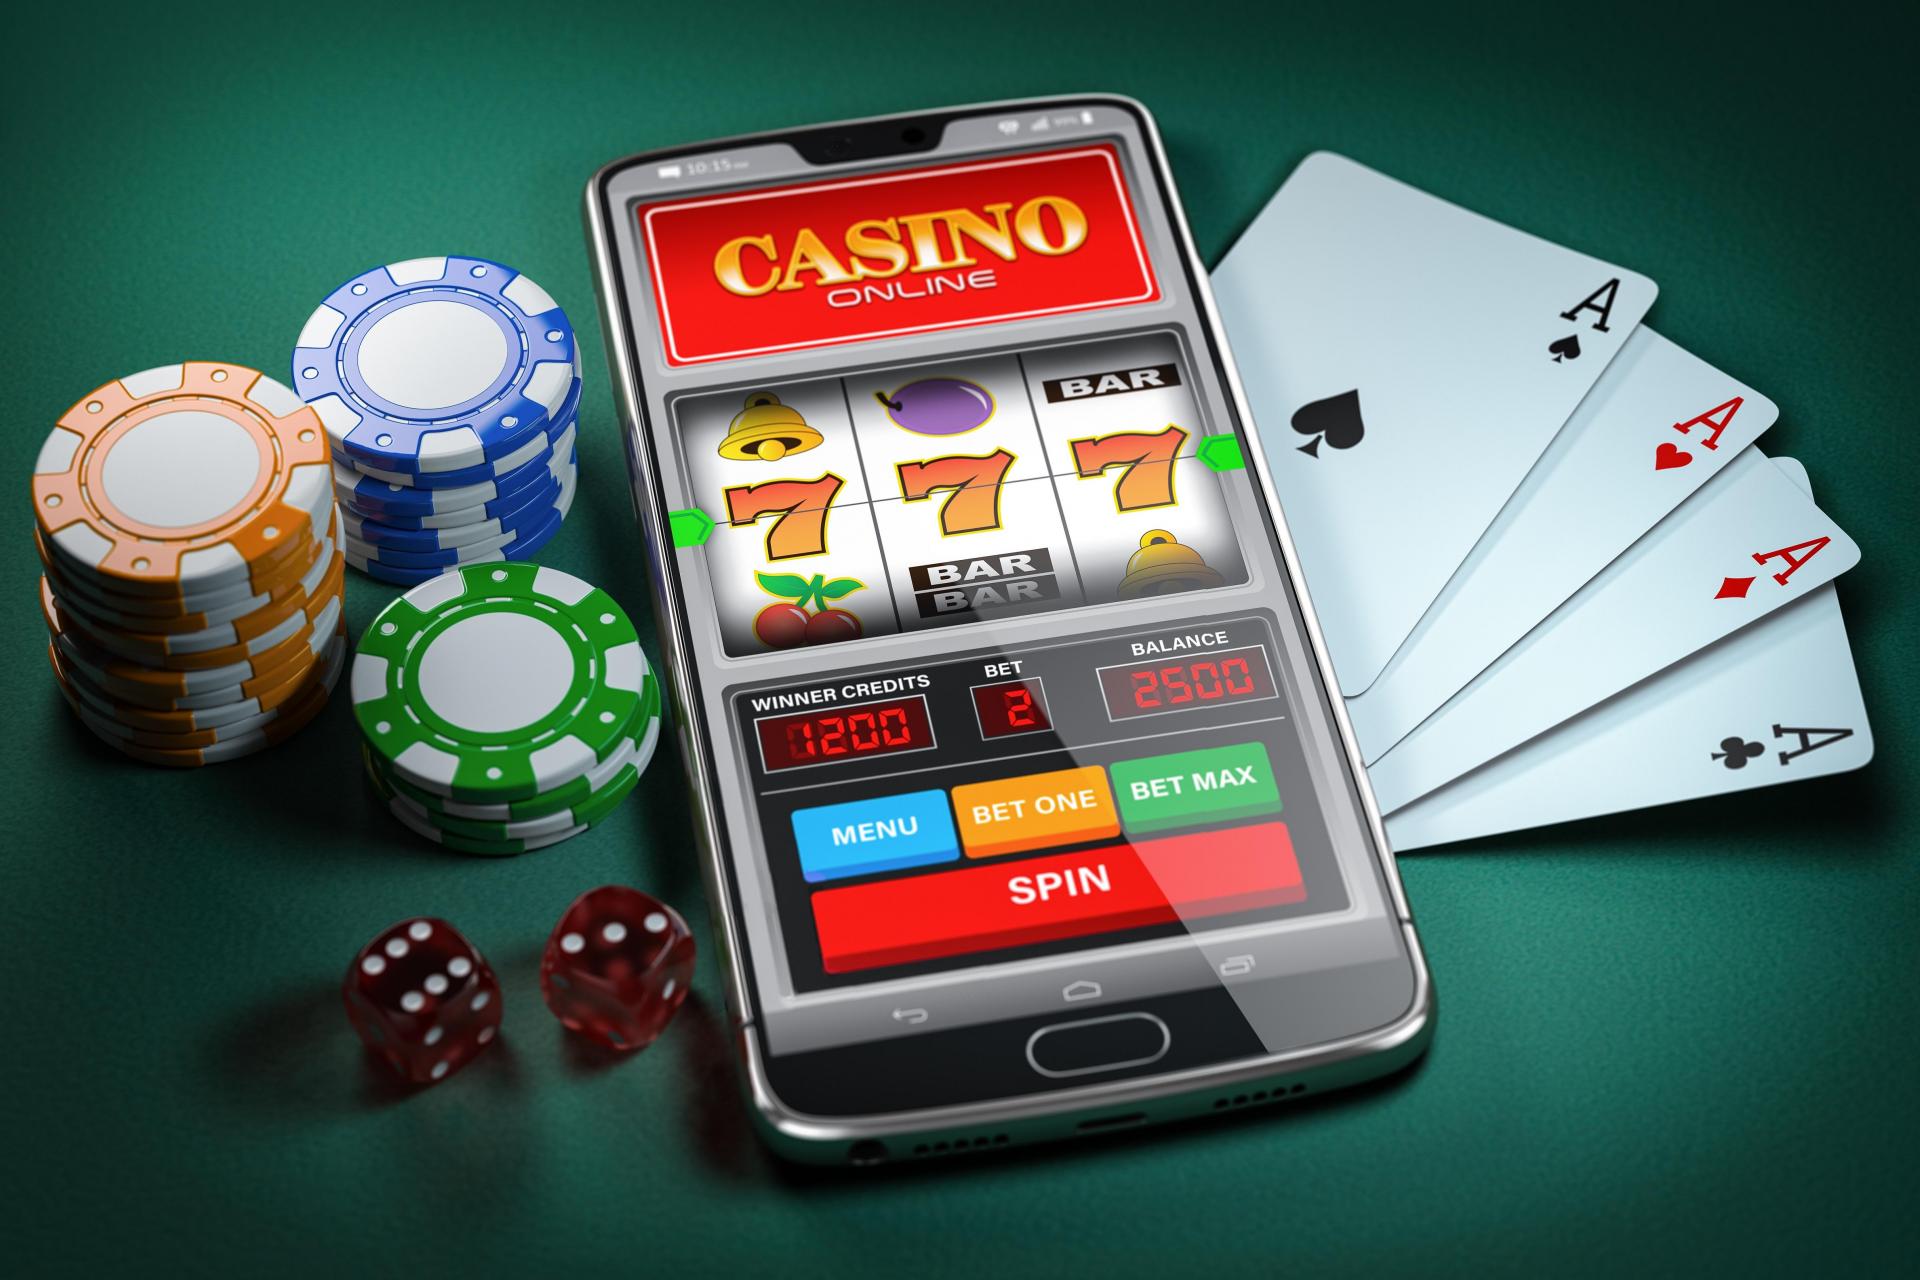 Báo giá thiết kế web app casino, Báo giá thiết kế web casino, Báo giá thiết kế app casino, giá thiết kế web app casino, giá thiết kế app casino,  giá thiết kế web casino,  thiết kế web app casino, thiết kế app casino, thiết kế web casino